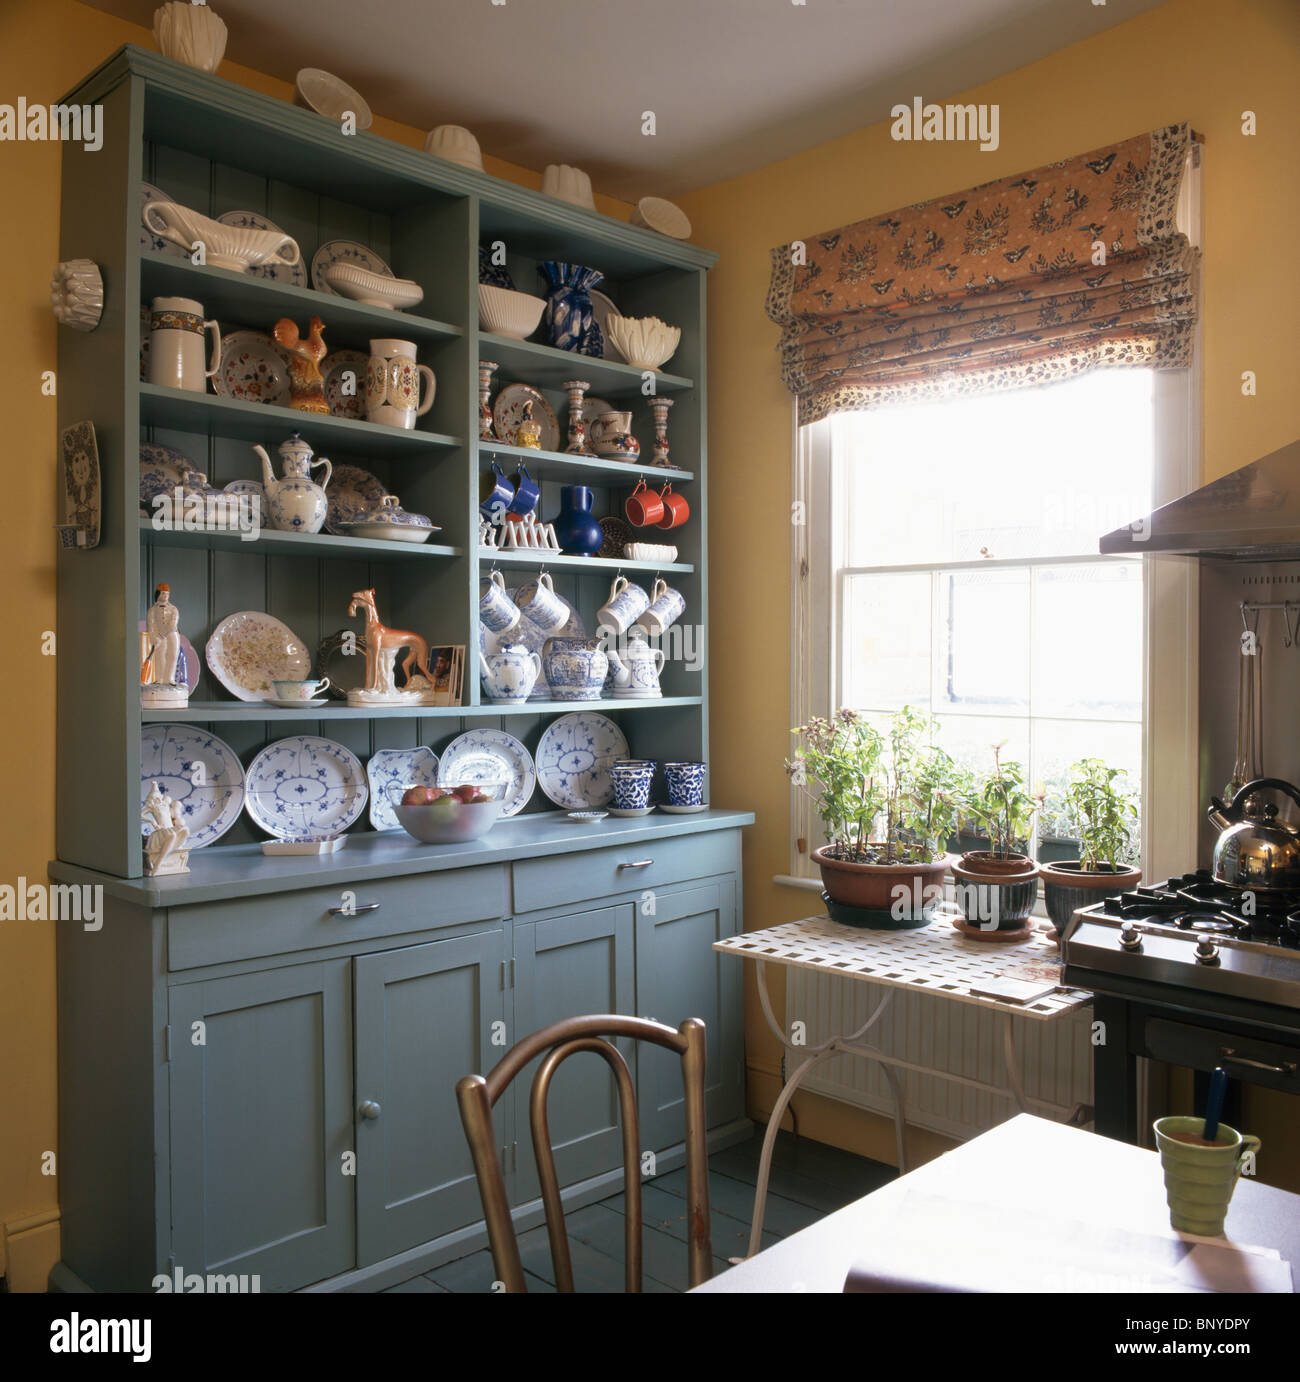 Blau grün Kommode mit Geschirr auf den Regalen in traditionellen Küche  Esszimmer mit gemusterten Rollo am Fenster Stockfotografie - Alamy